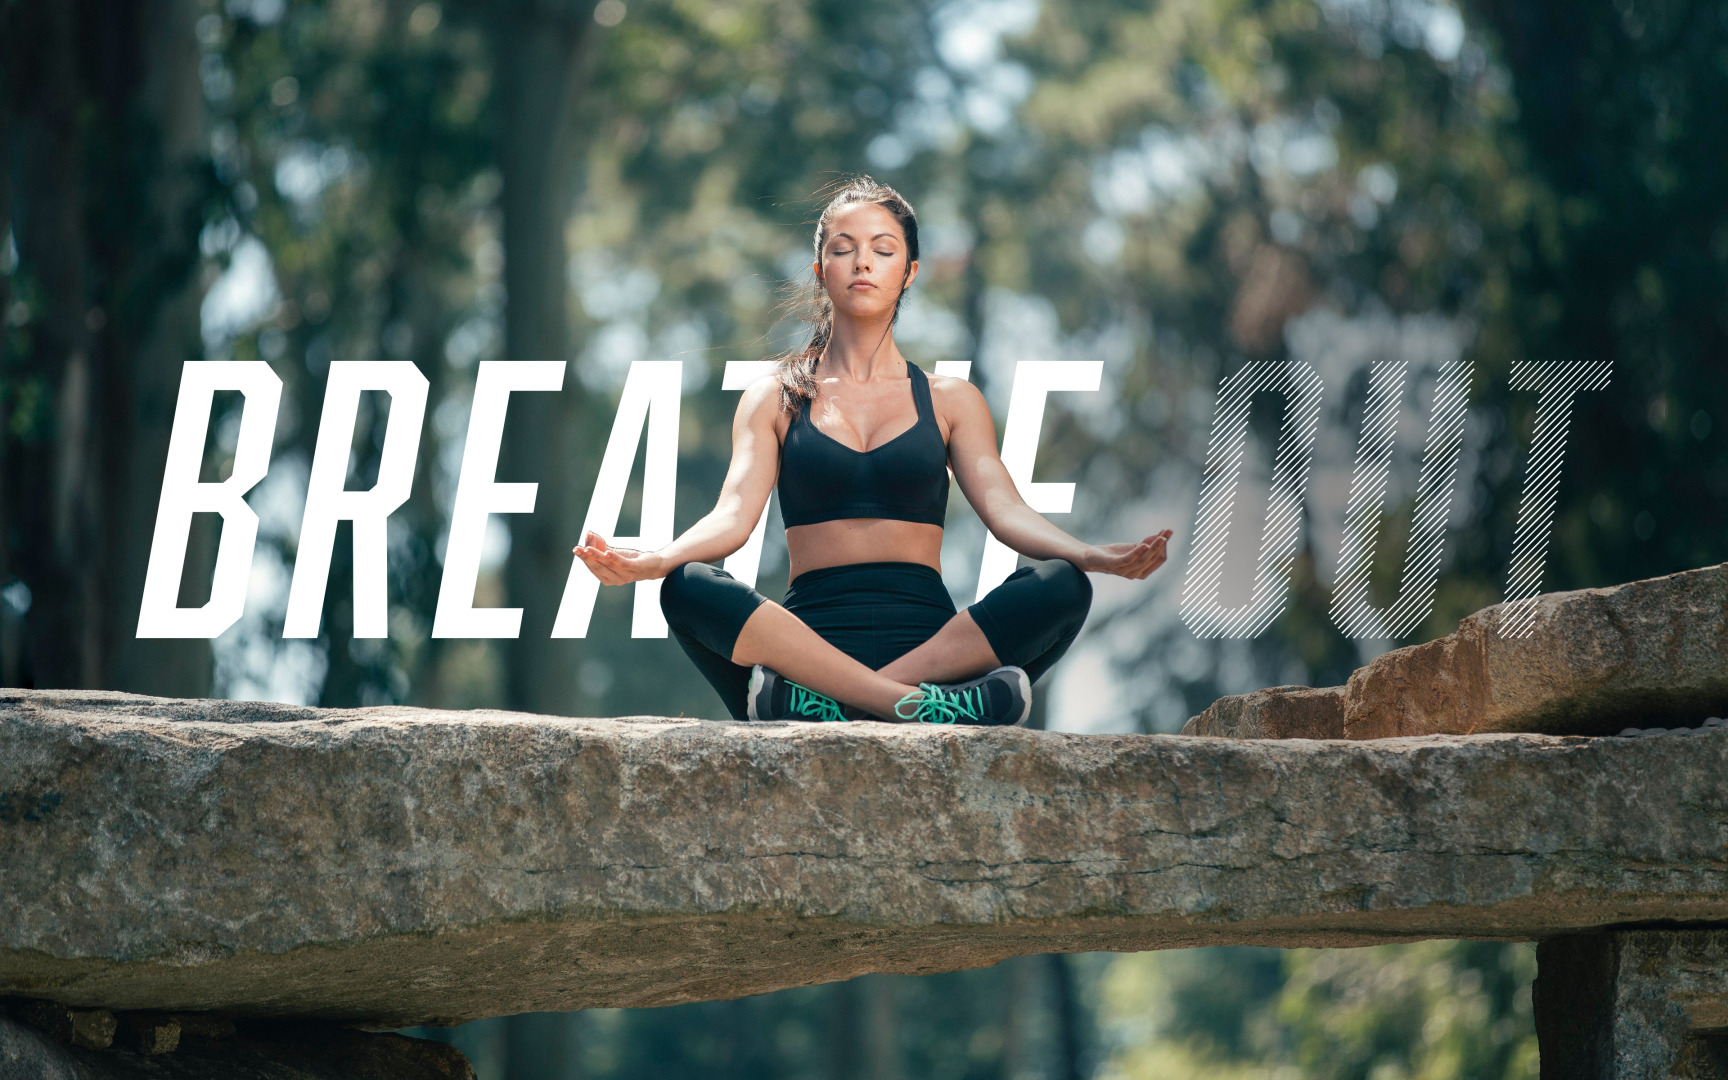 Imagem fotográfica do ginásio Breathe Sport Fitness, no qual aparece uma modelo feminina sentada no exterior a relaxar e lettering "breathe out".